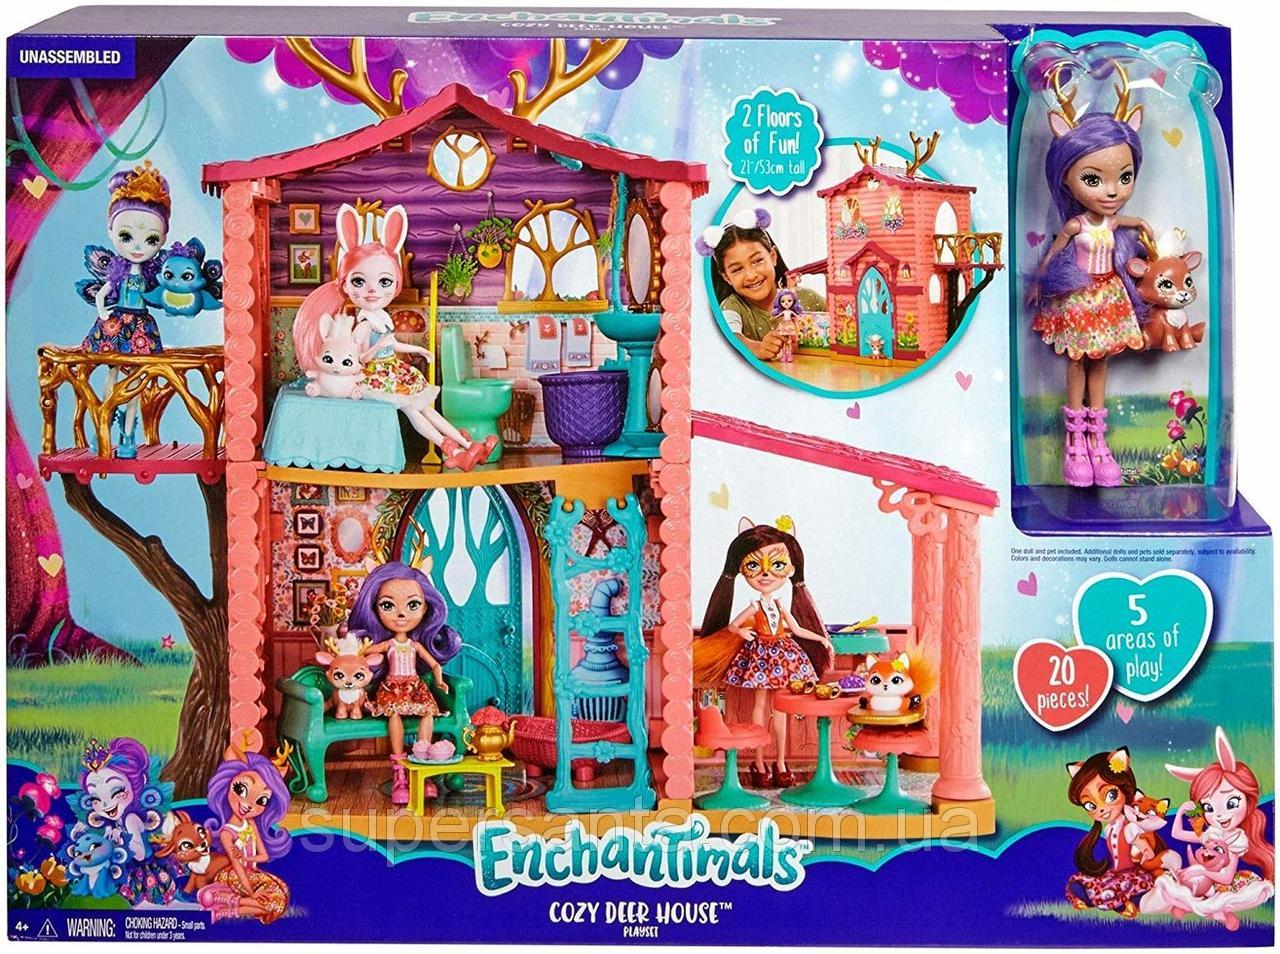 Dekoration Balkon Schön ÐÐ³ÑÐ¾Ð²Ð¾Ð¹ Ð½Ð°Ð±Ð¾Ñ Ð­Ð½ÑÐ°Ð½ÑÐ¸Ð¼Ð°Ð Ñ ÐÐ¾Ð¼Ð¸Ðº Enchantimals Cosy House Playset with Danessa Deer Doll and Sprint Figure Mattel Bigl